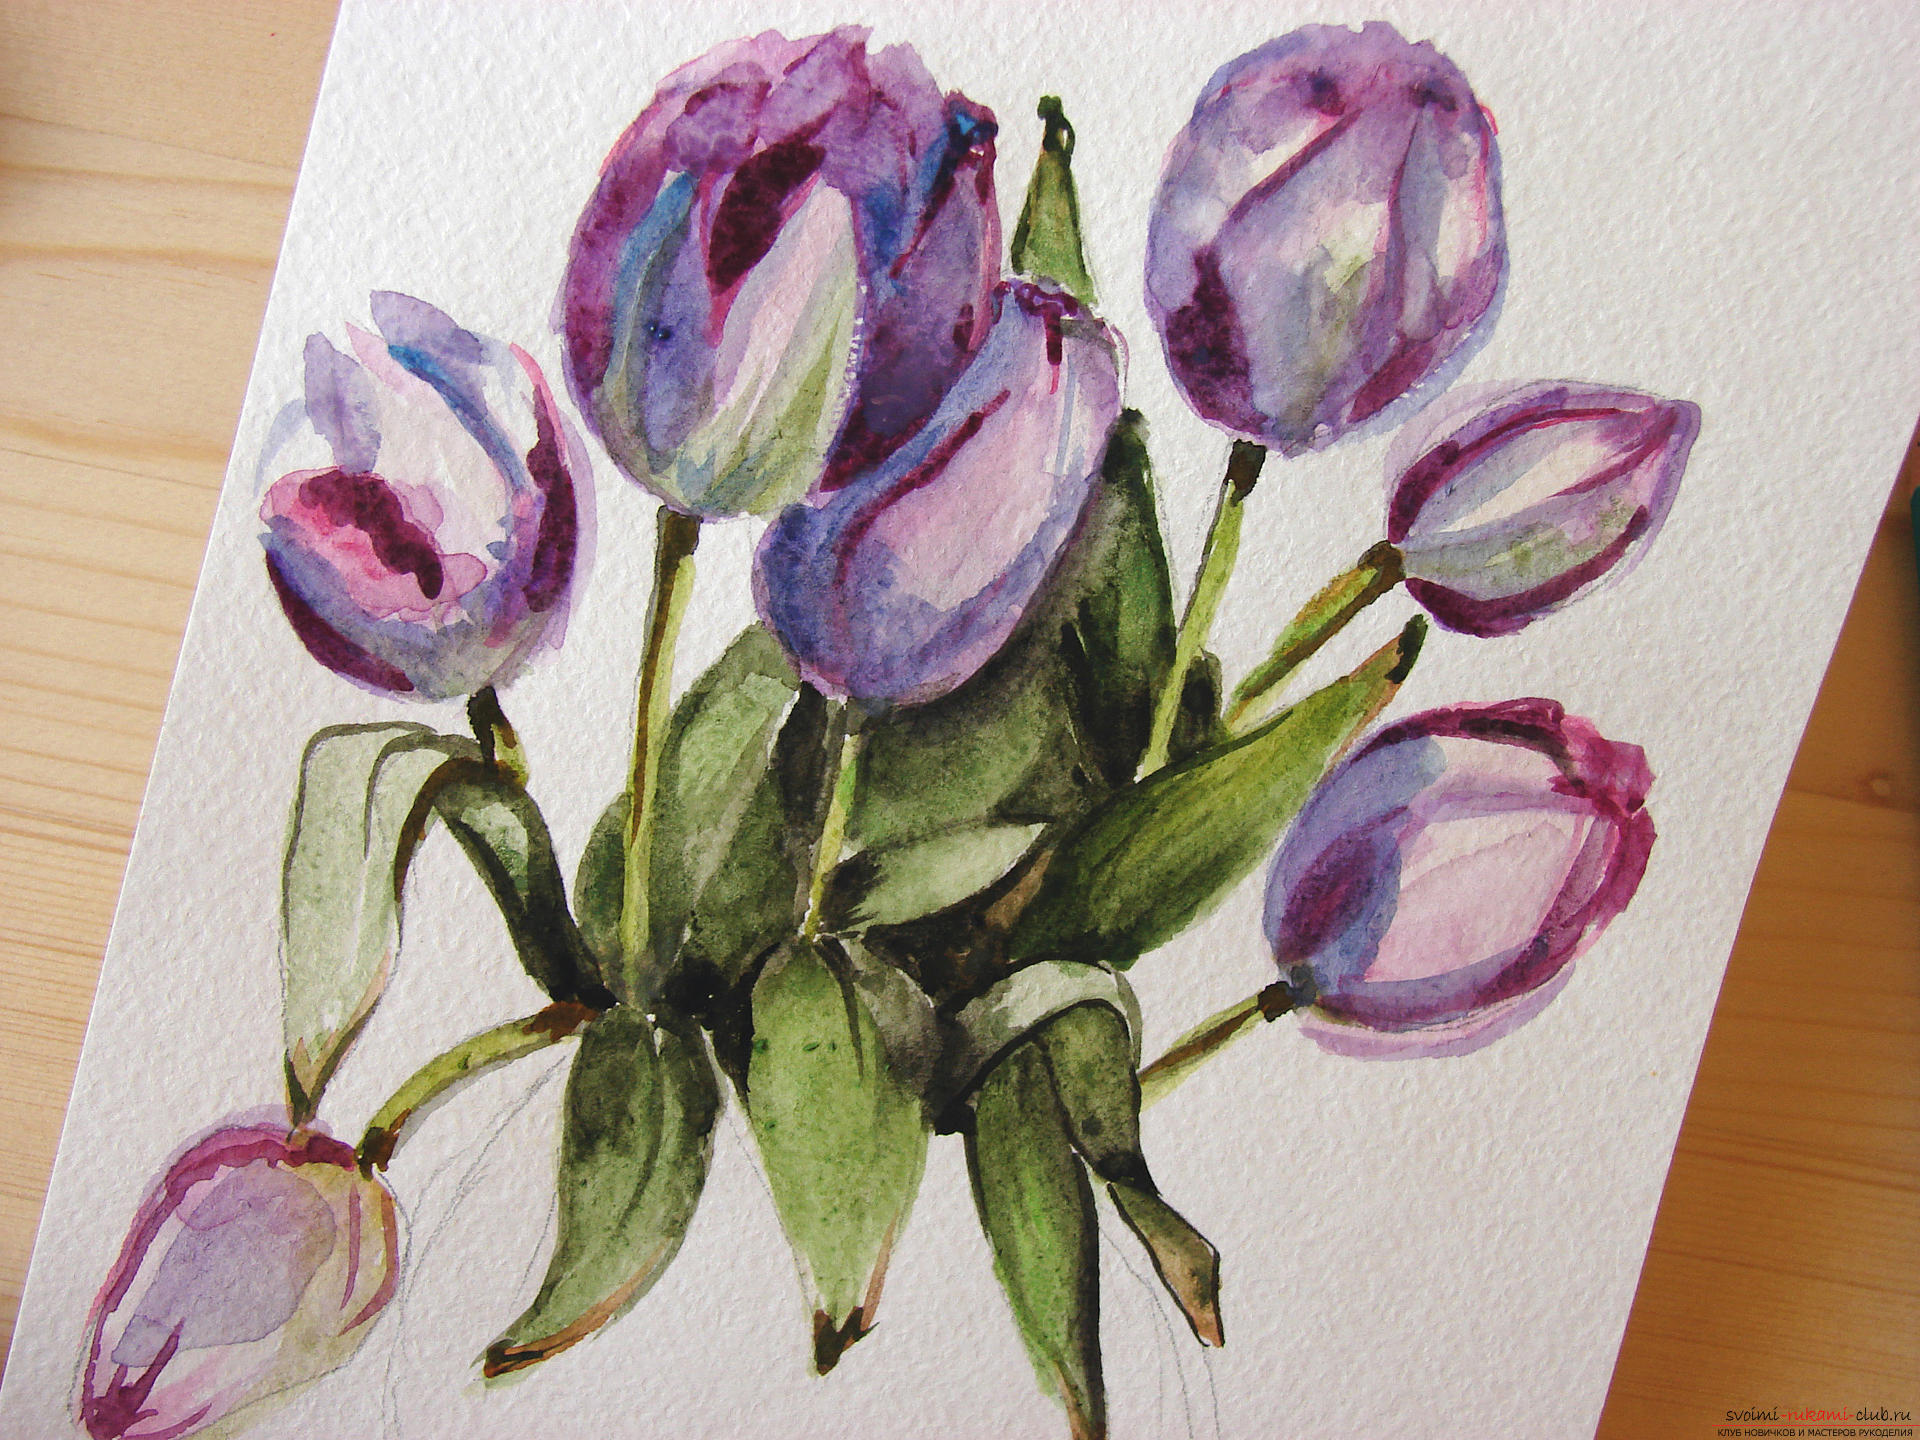 Мастер-класс по рисованию с фото научит как нарисовать цветы, подробно описав как рисуются тюльпаны поэтапно.. Фото №20